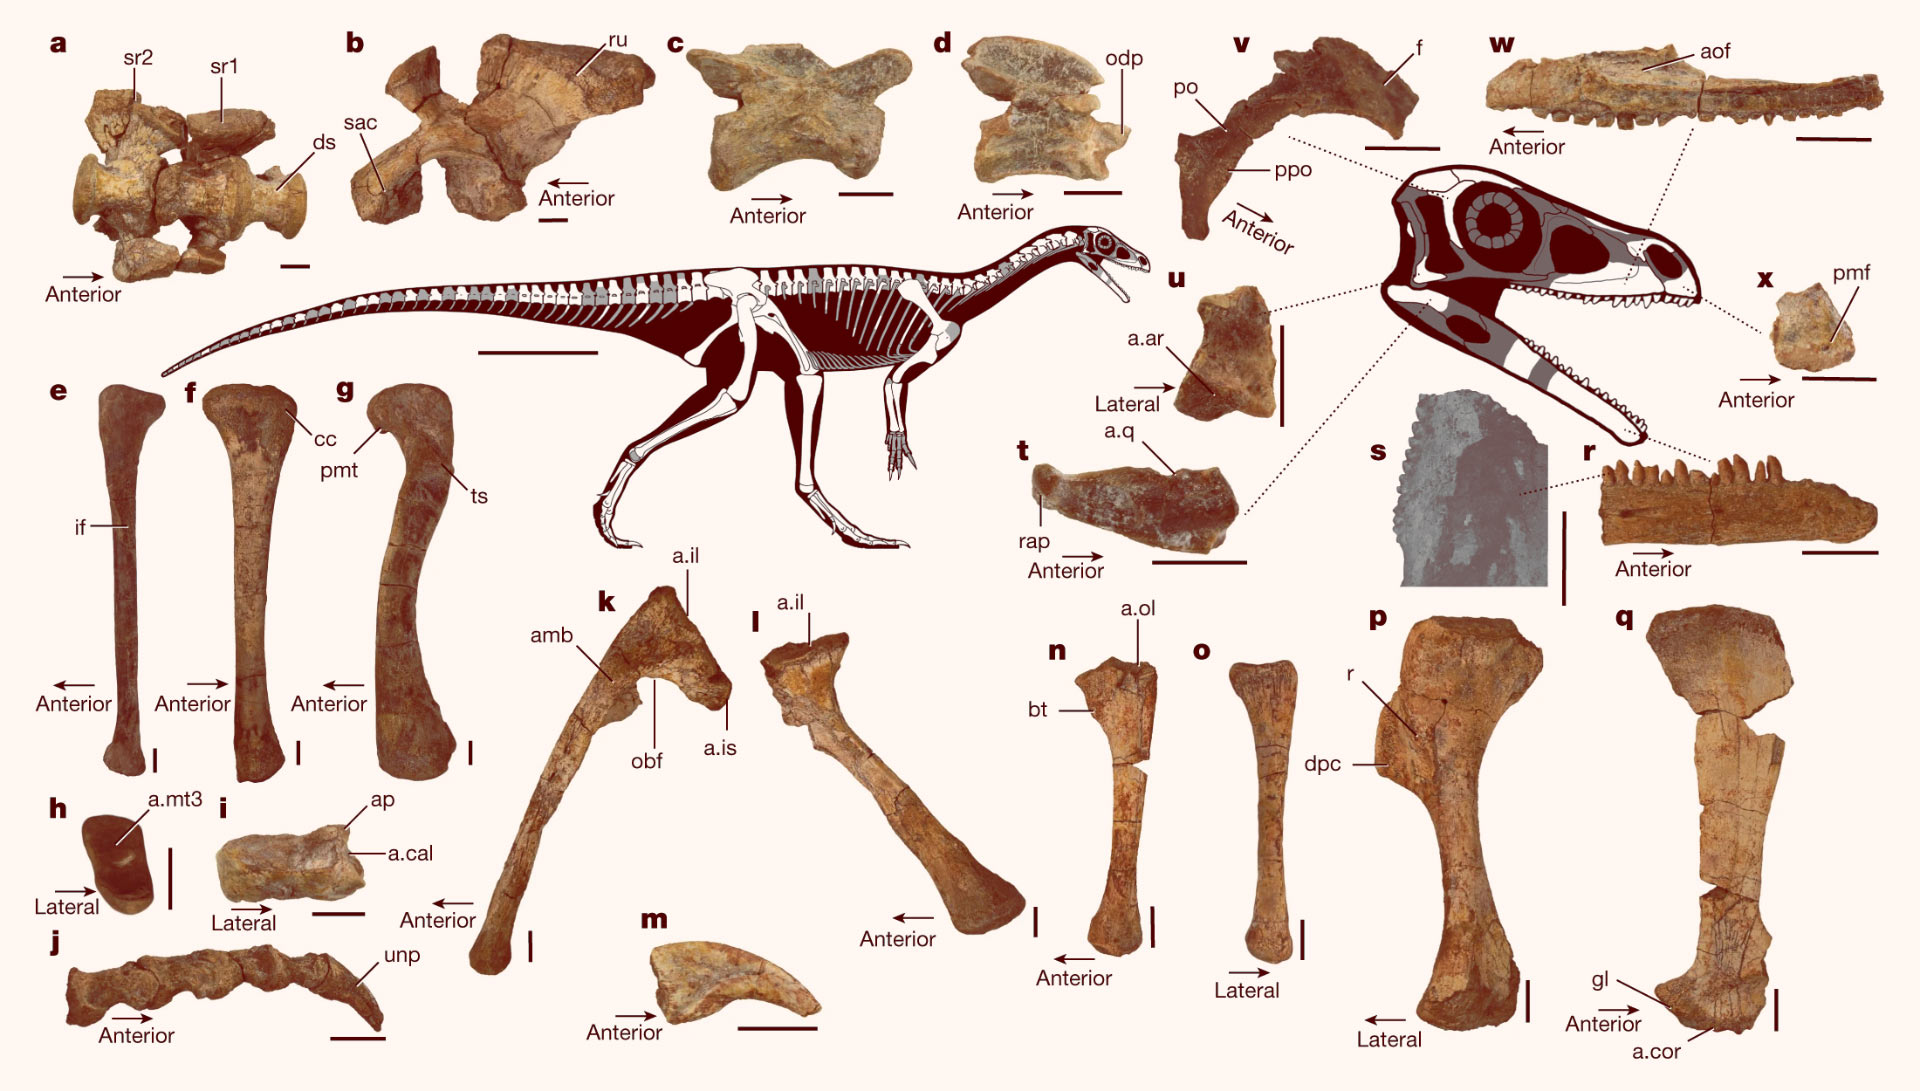 Hóa thạch khủng long hoàn chỉnh và lâu đời nhất của Châu Phi được tìm thấy ở Zimbabwe! - Ảnh 2.